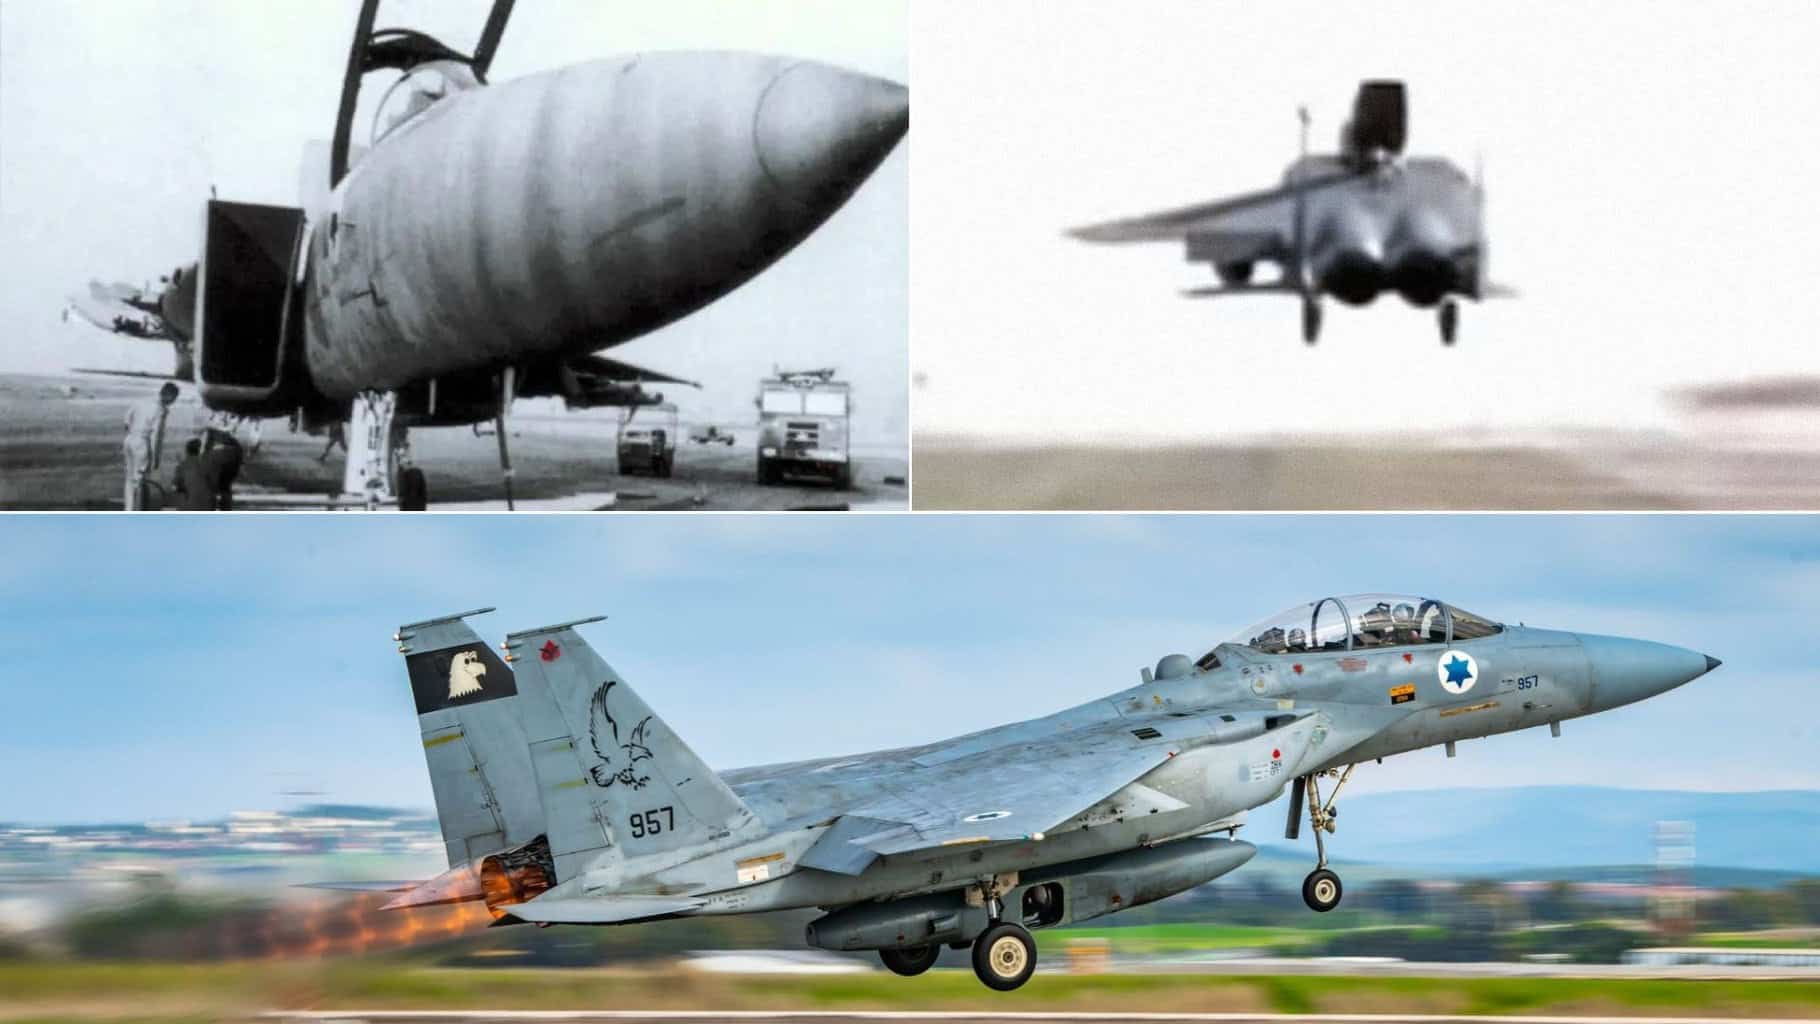 Cuarenta años después de un famoso accidente, un F-15 israelí que aterrizó sin una de sus alas sigue volando. Fotos vía The Aviationist, Fuerza Aérea Israelí.